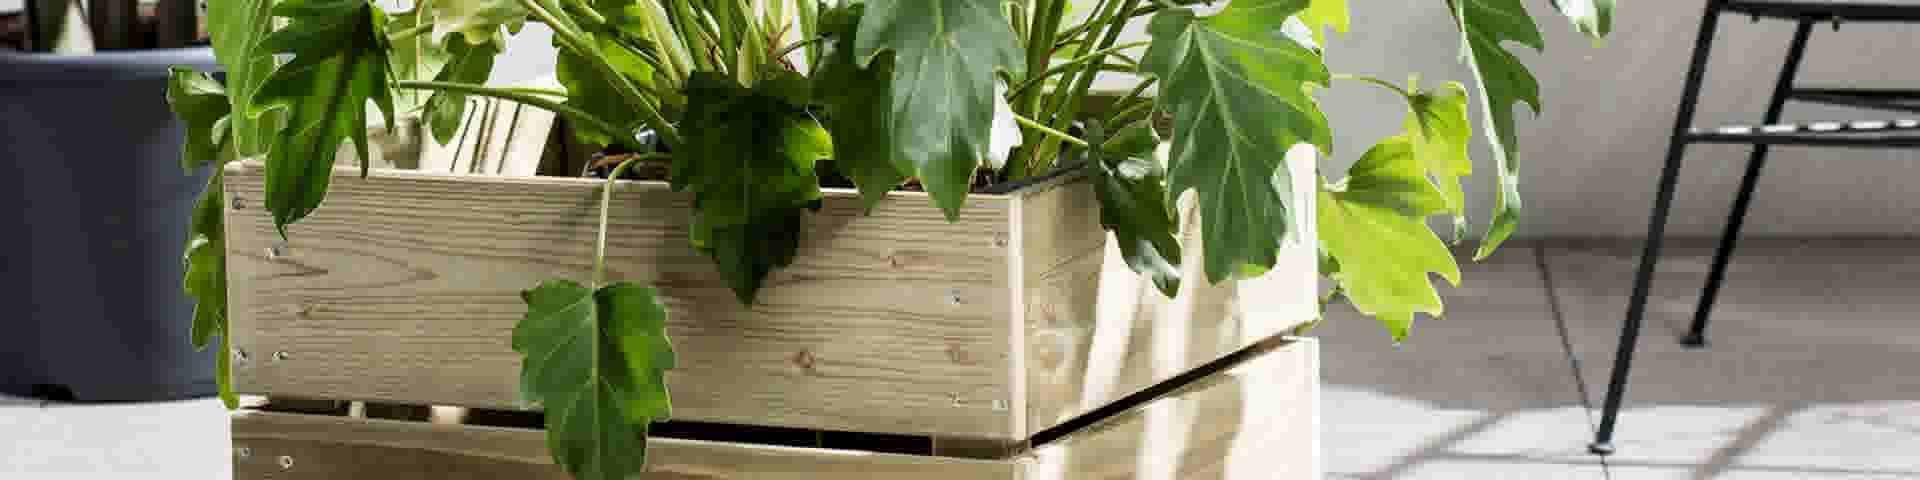 Met hout maak zelf een plantenbak of bloembak: stappenplan | GAMMA